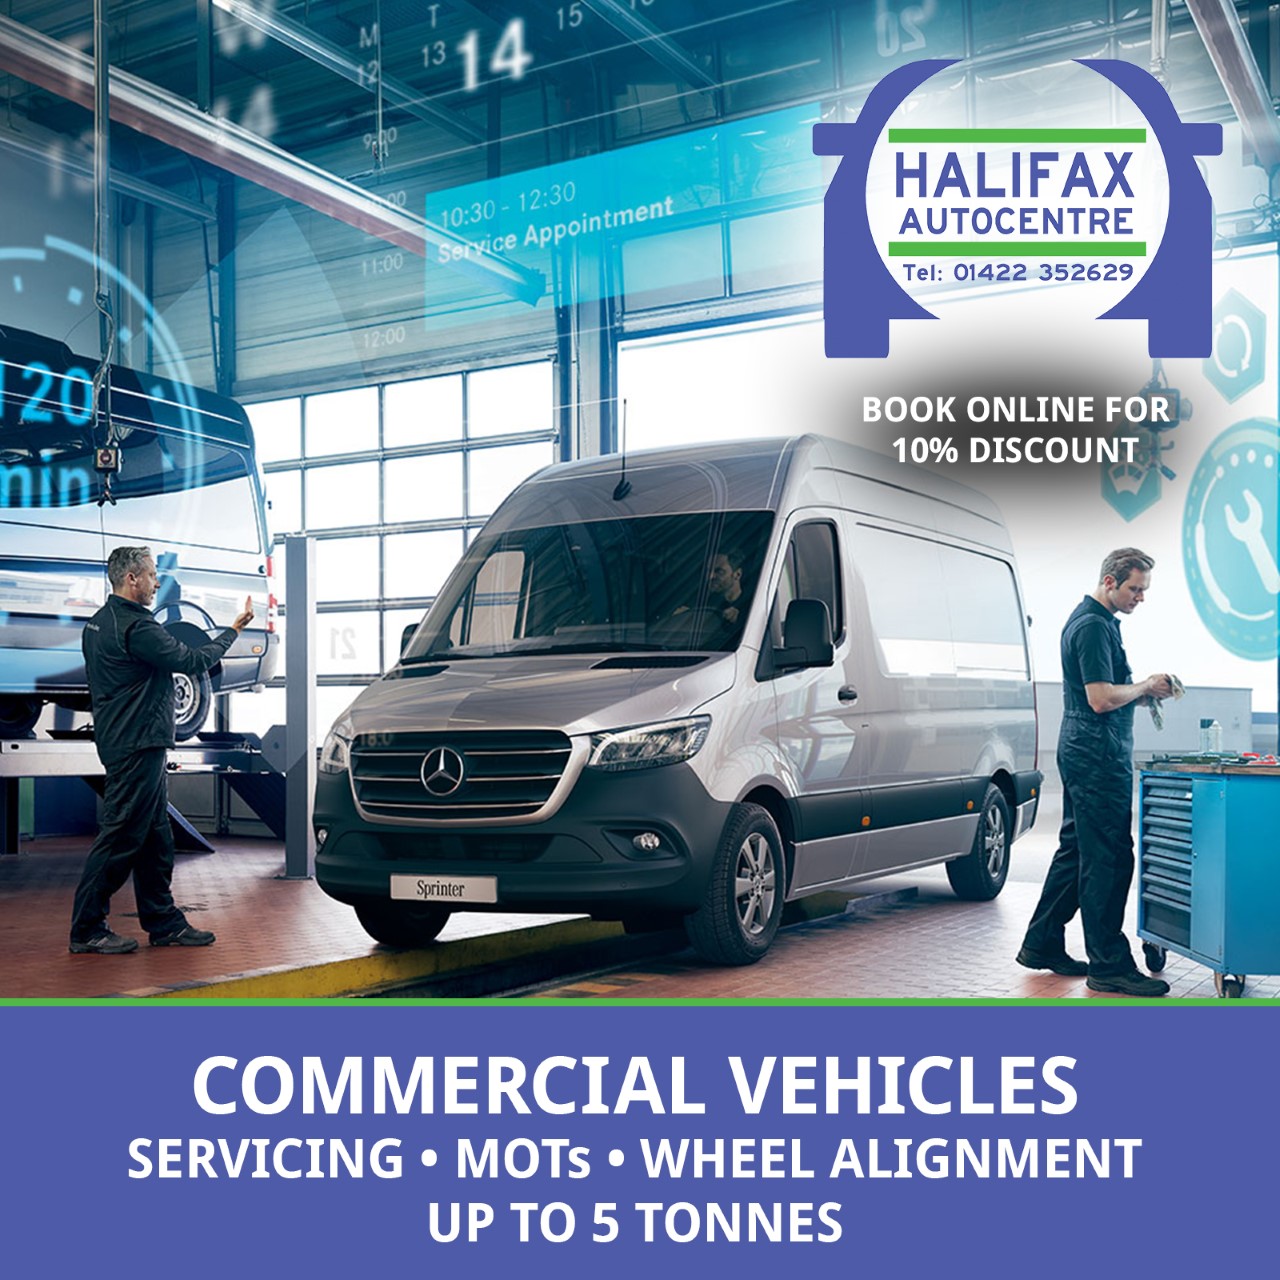 Halifax Autocentre - Commercial Vehicle MOTs